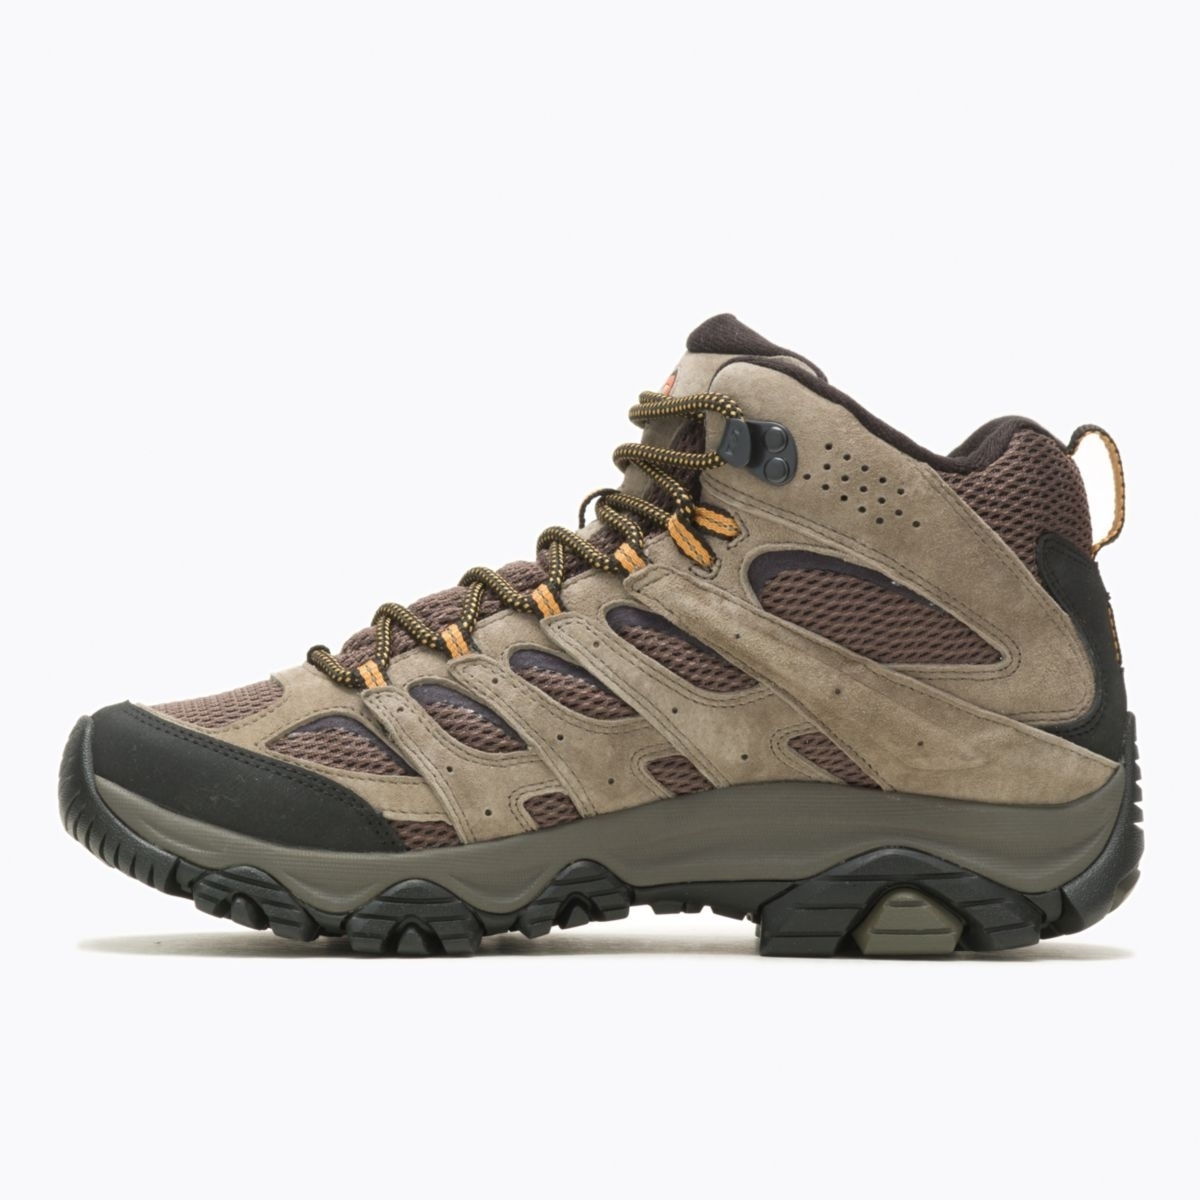 Merrell Men's Moab 3 Mid GORE-TEX Hiking Boot Walnut - J035795 WALNUT - WALNUT, 10